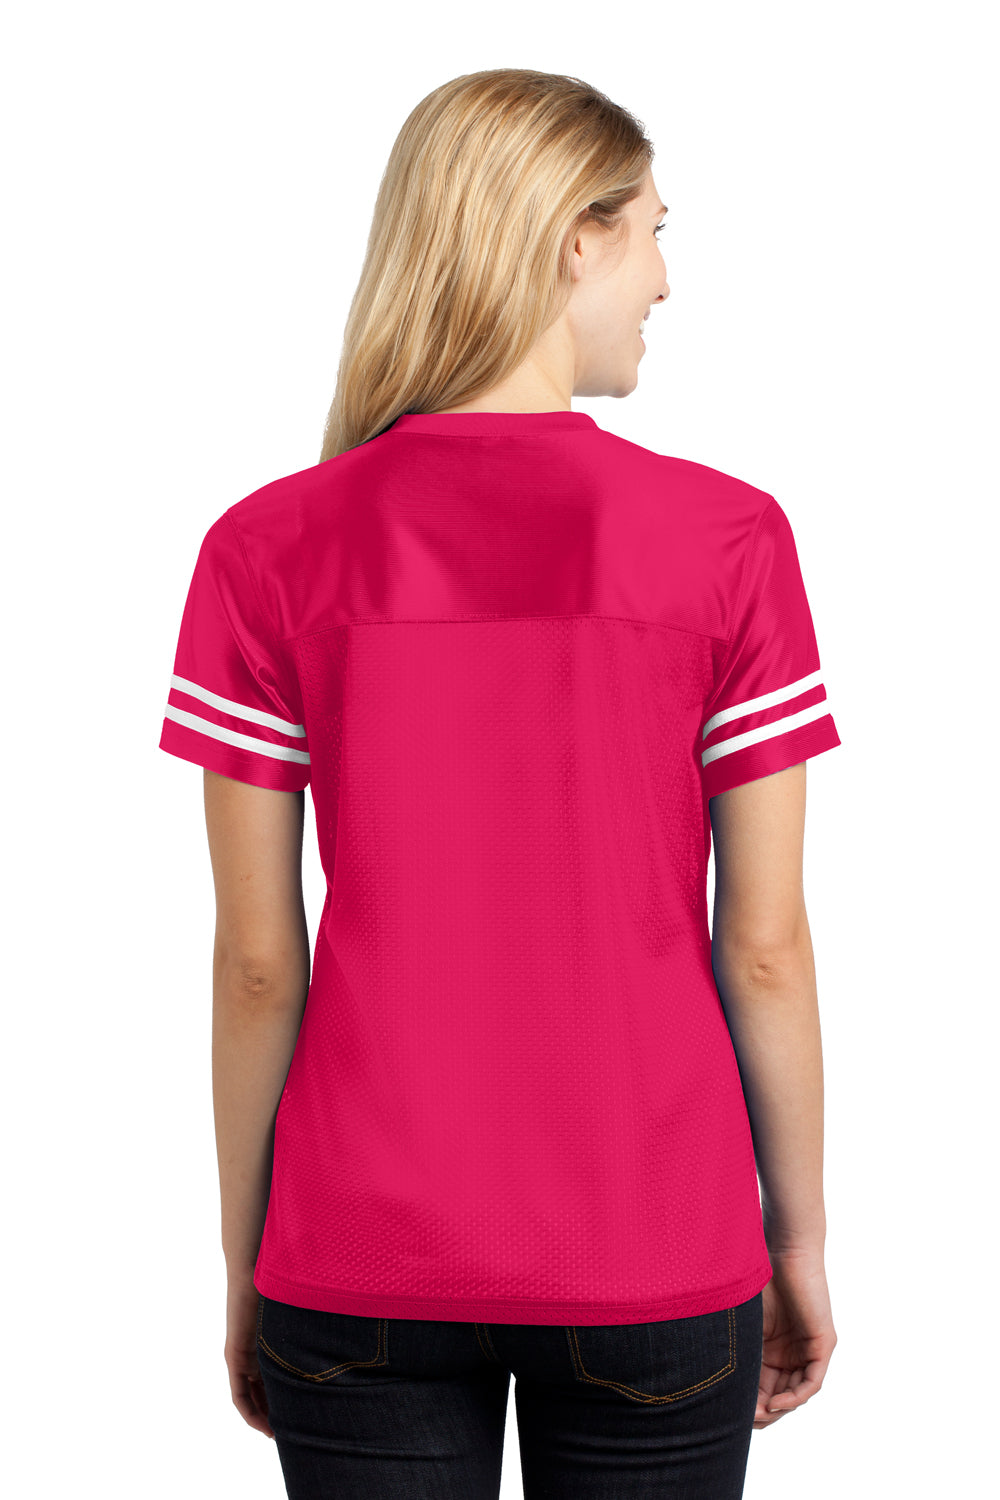 Sport-Tek LST307 Womens Short Sleeve V-Neck T-Shirt Fuchsia Pink Back